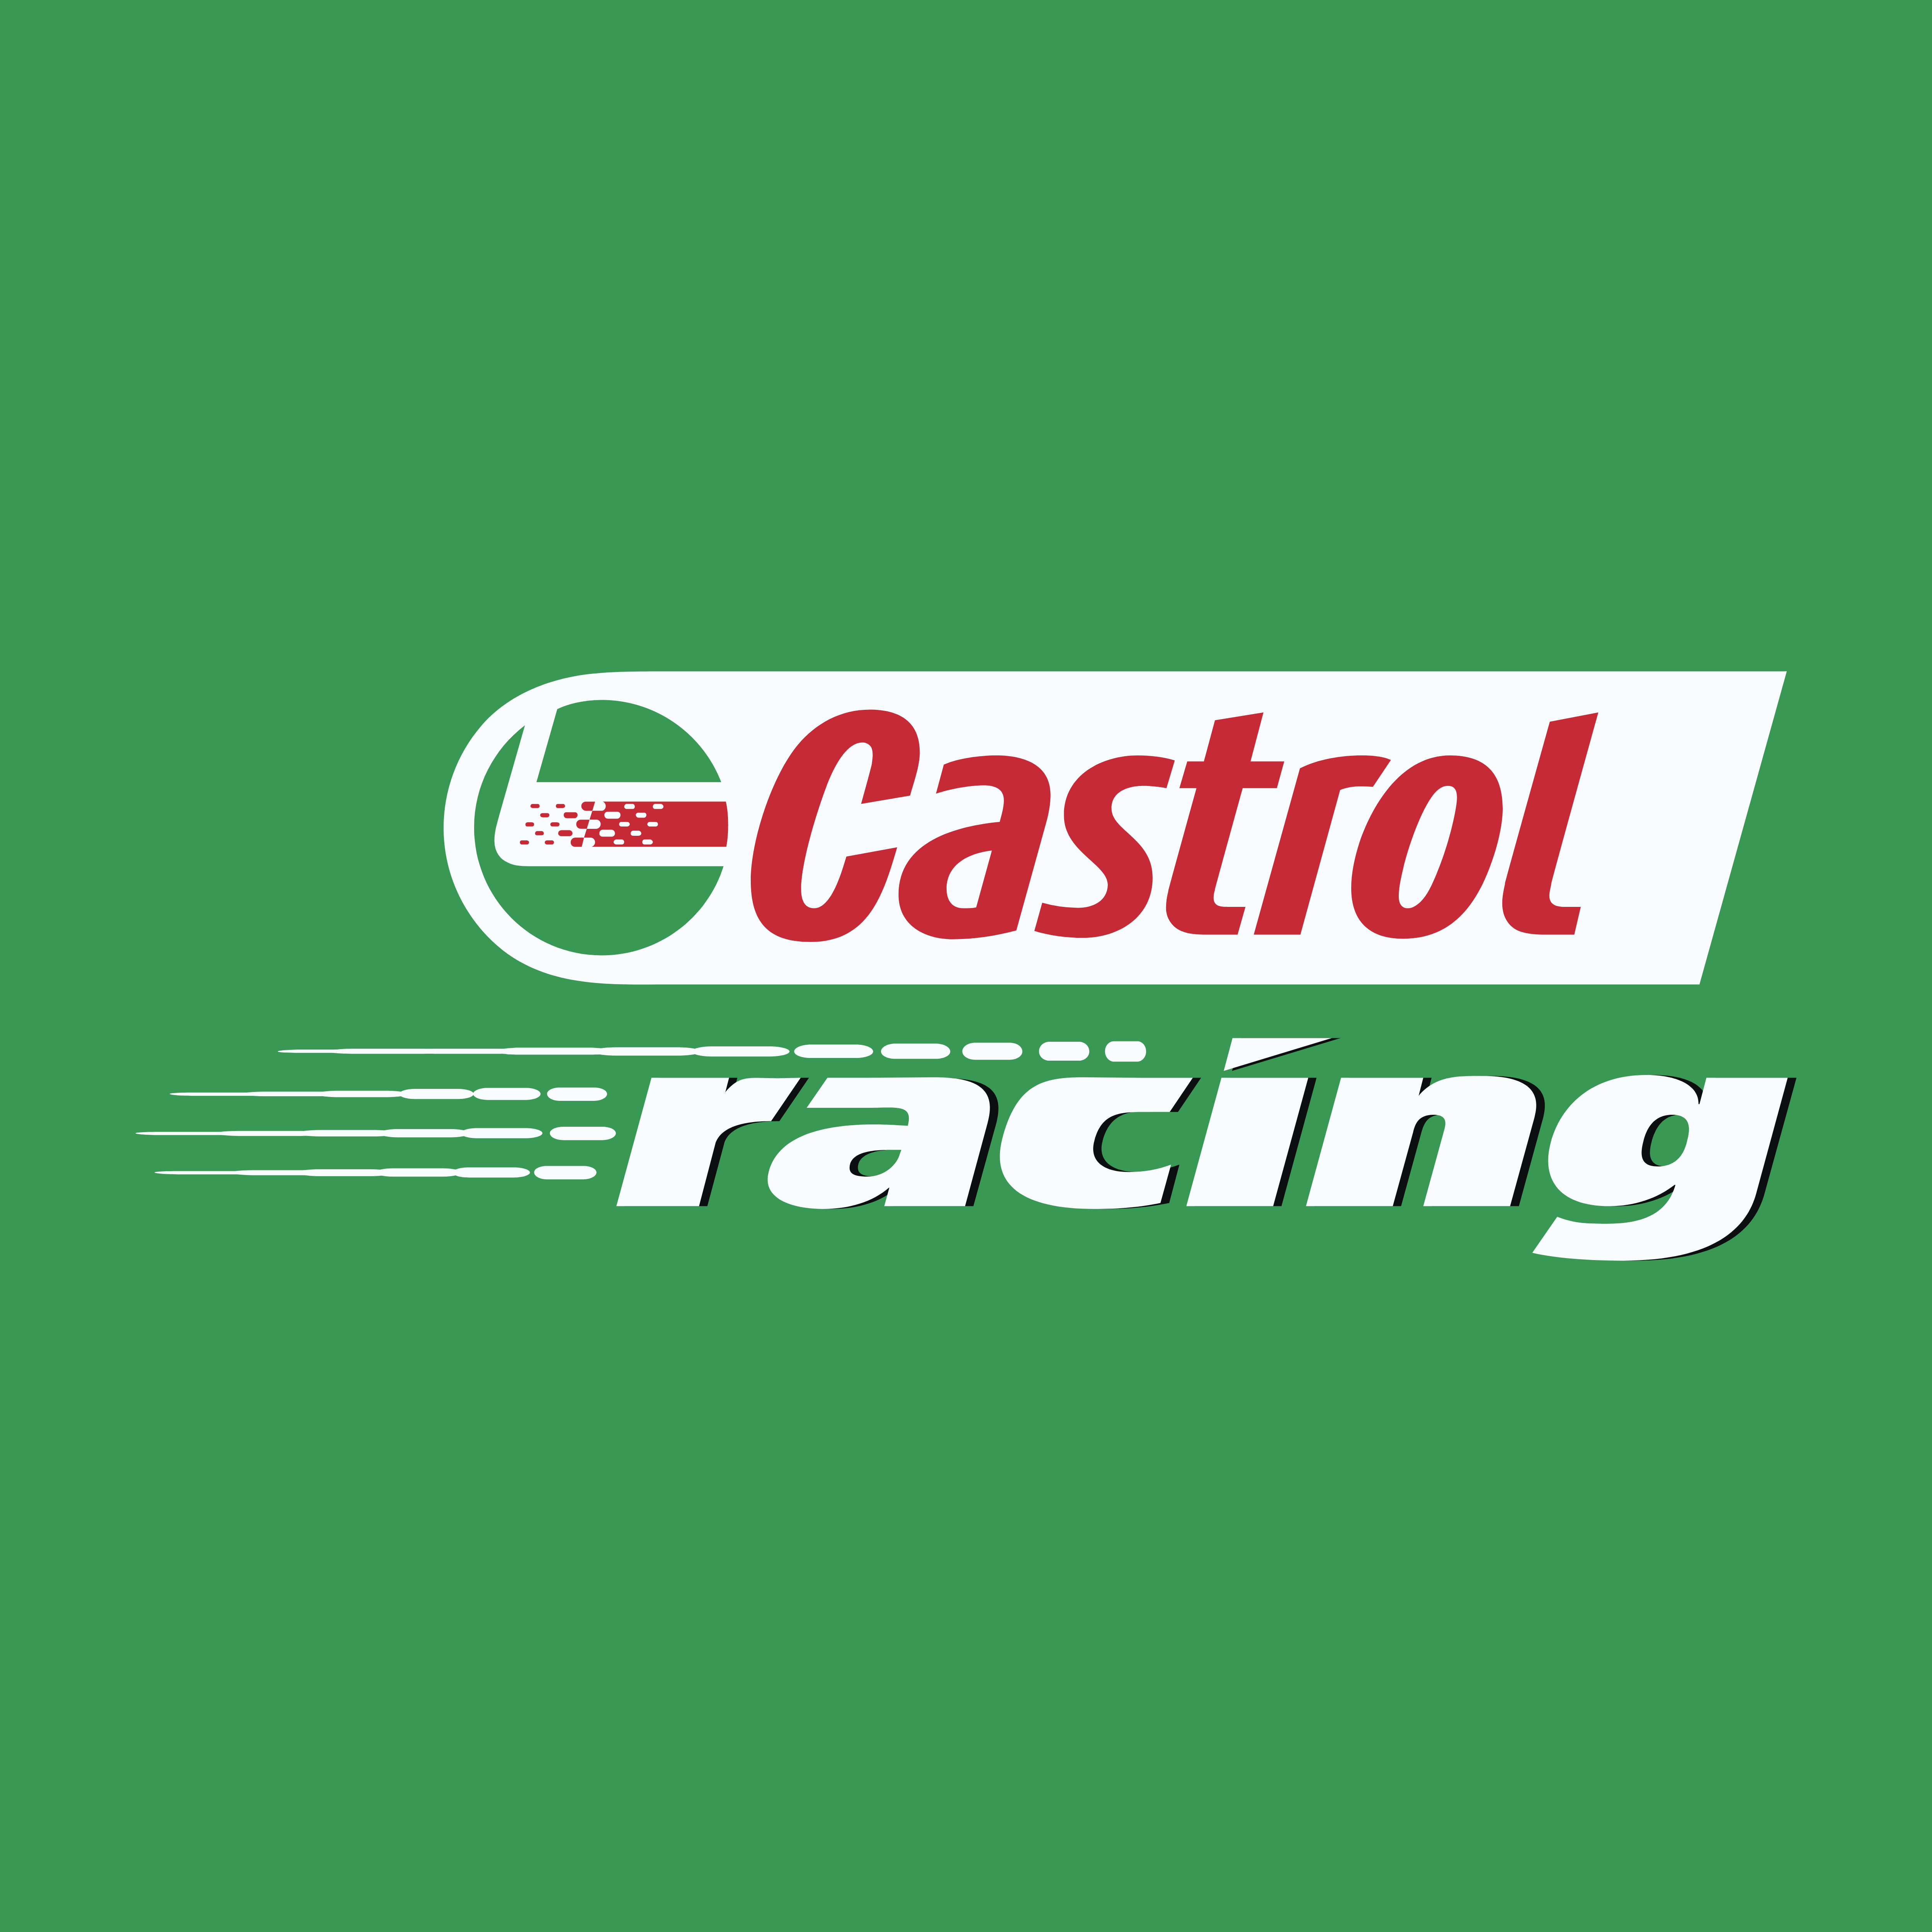 castrol-logos-download